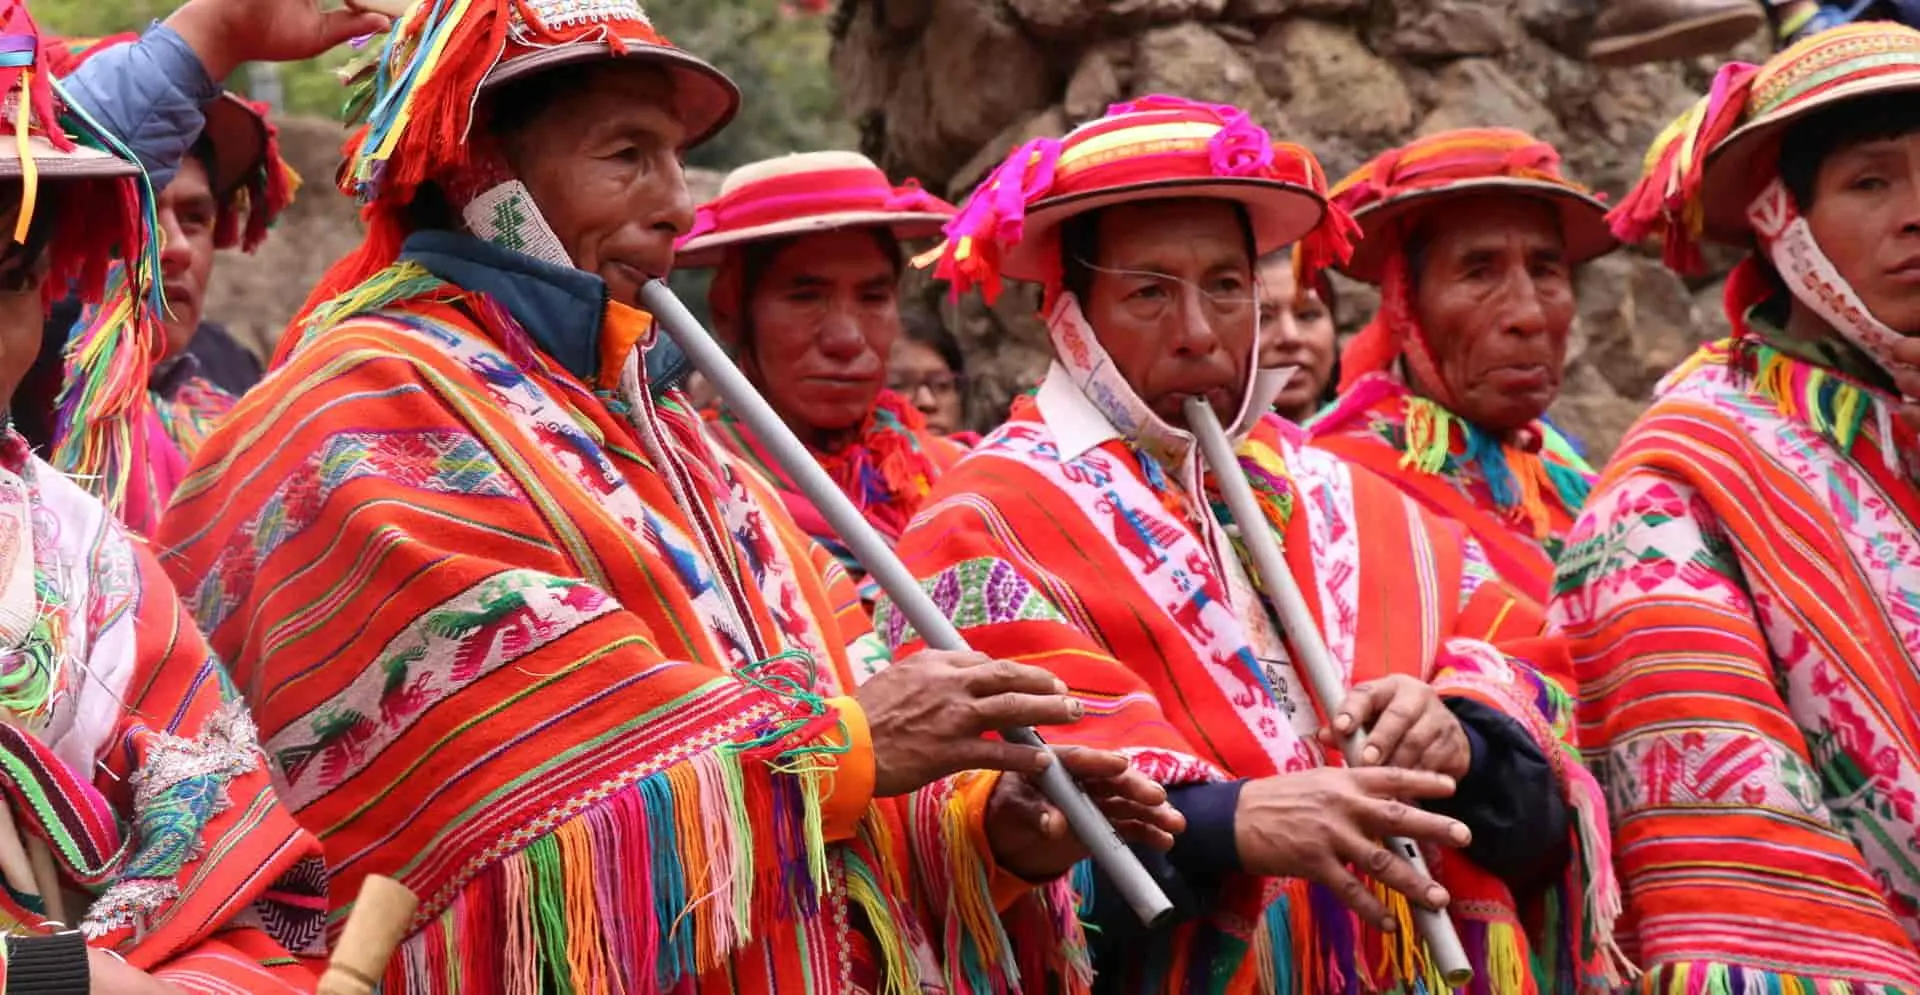 vestimenta de la cultura andina - Que lleva en la mano la Ñusta